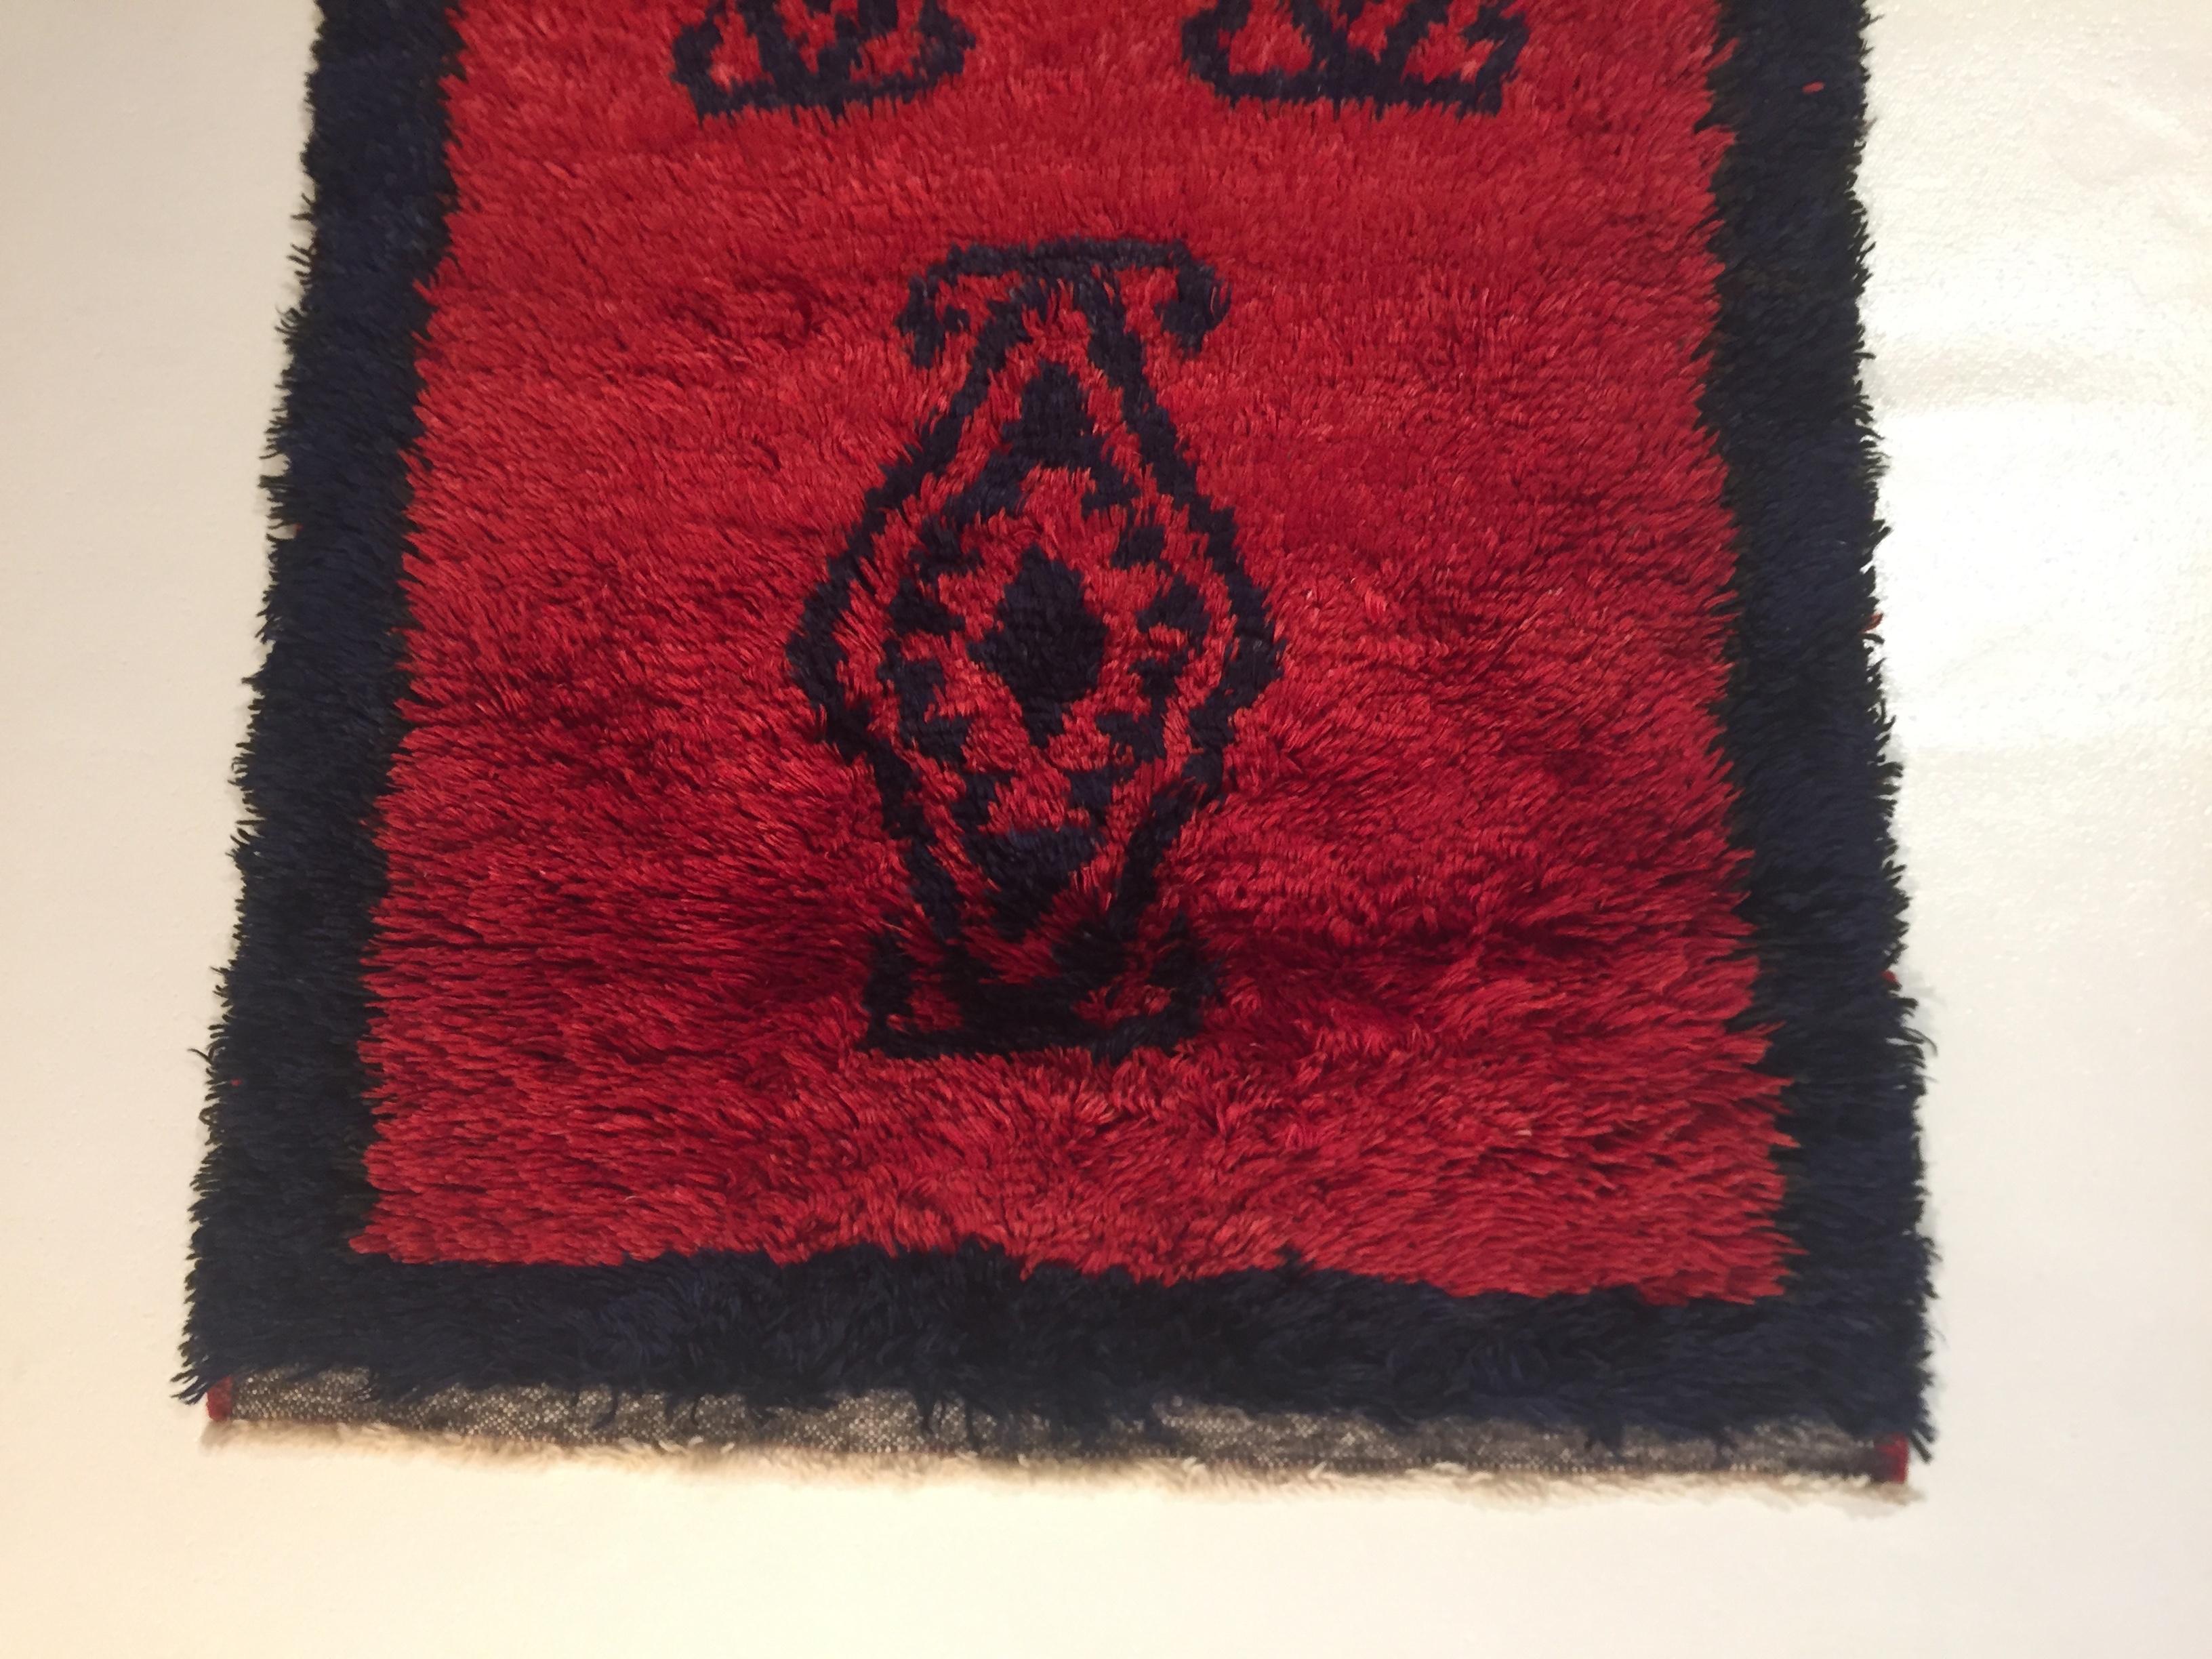 Tulu avec un fond d'un beau rouge cochenille, décoré de polygones de forme irrégulière en noir.
Les tapis Tulu sont des tapis turcs à poils hauts et irréguliers, avec des décorations très simples et des couleurs vives, principalement utilisés comme